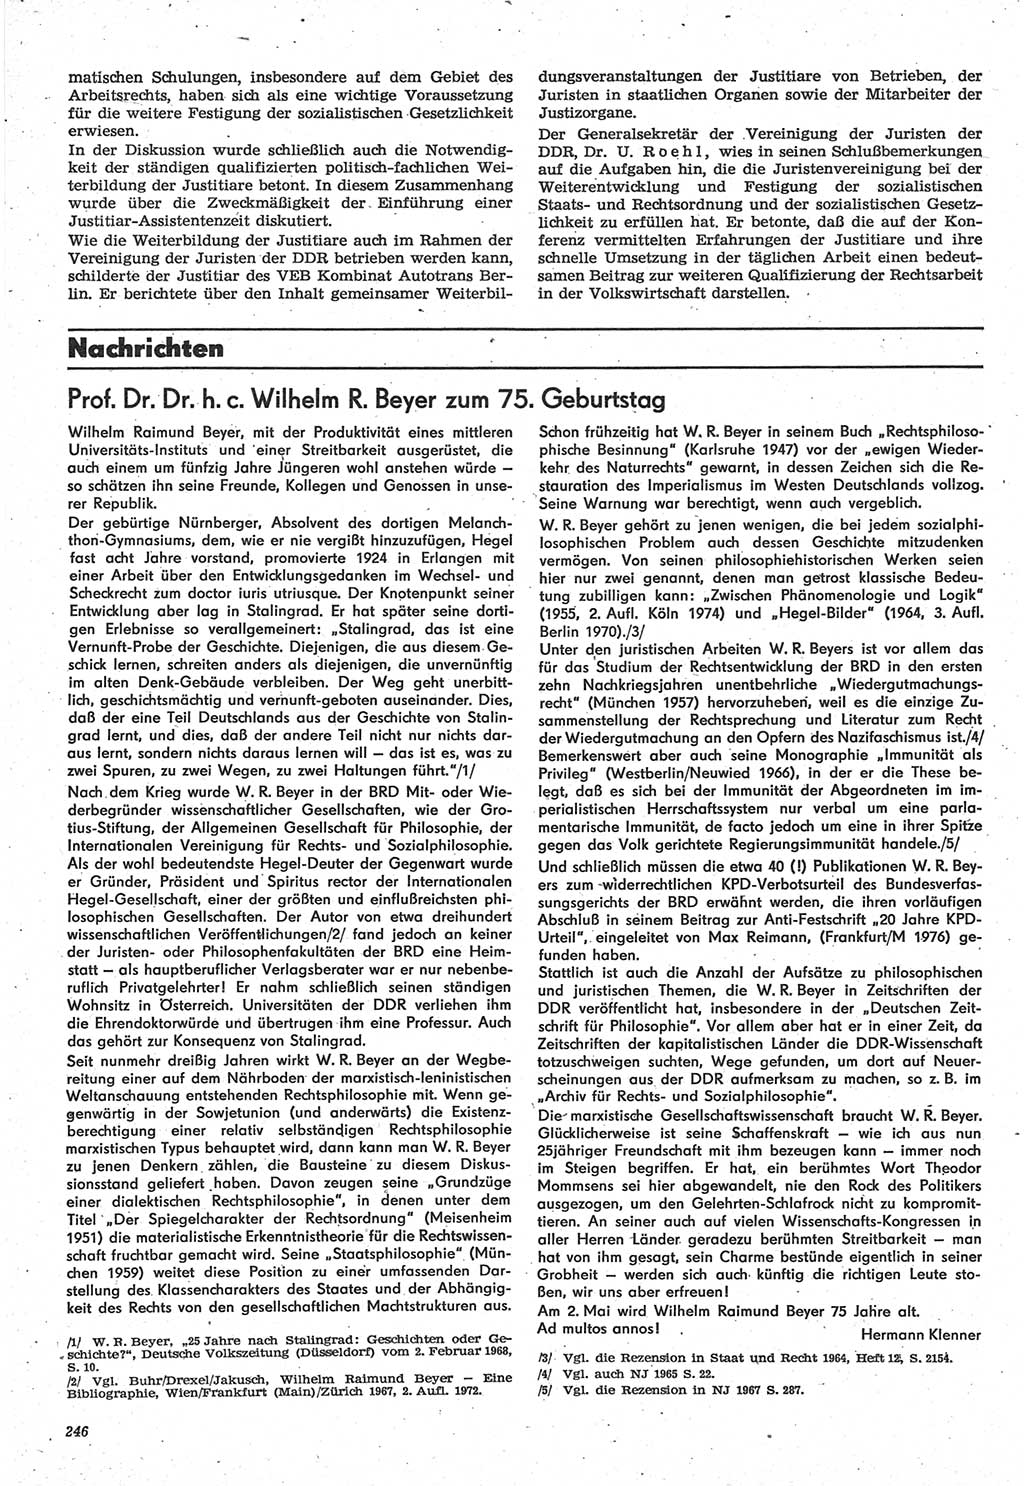 Neue Justiz (NJ), Zeitschrift für Recht und Rechtswissenschaft-Zeitschrift, sozialistisches Recht und Gesetzlichkeit, 31. Jahrgang 1977, Seite 246 (NJ DDR 1977, S. 246)